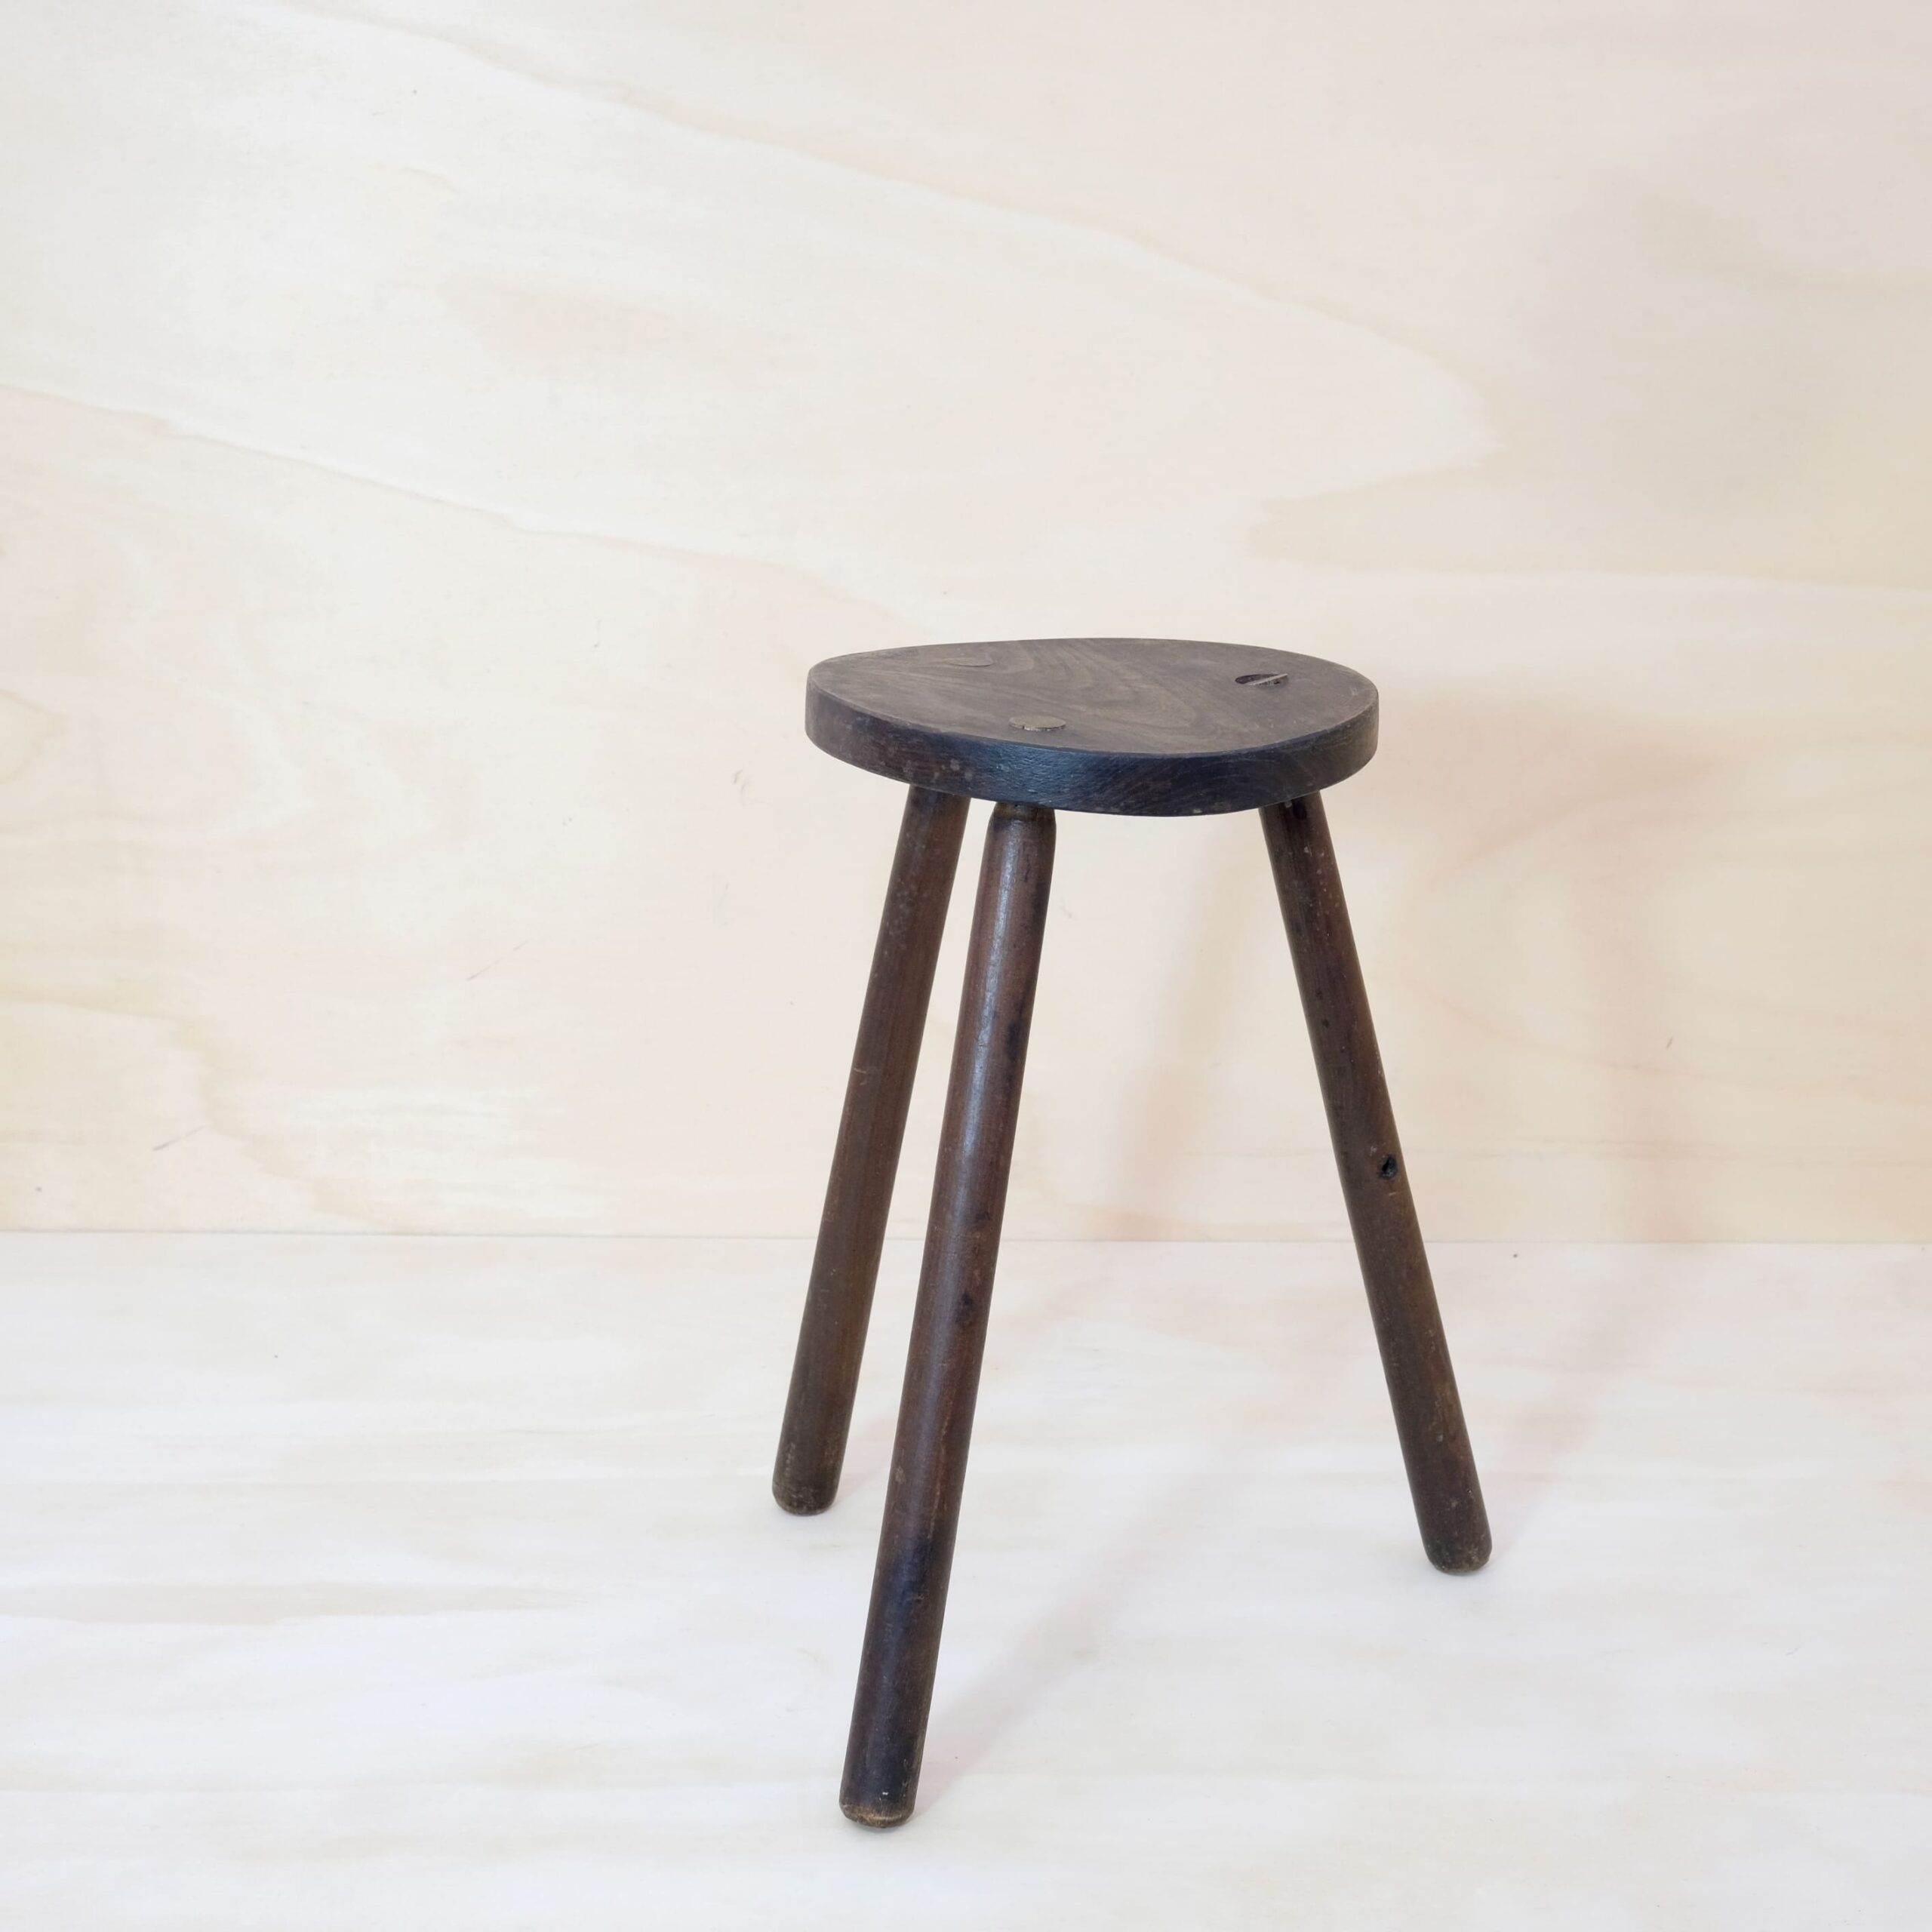 Dark solid wood tripod stool.